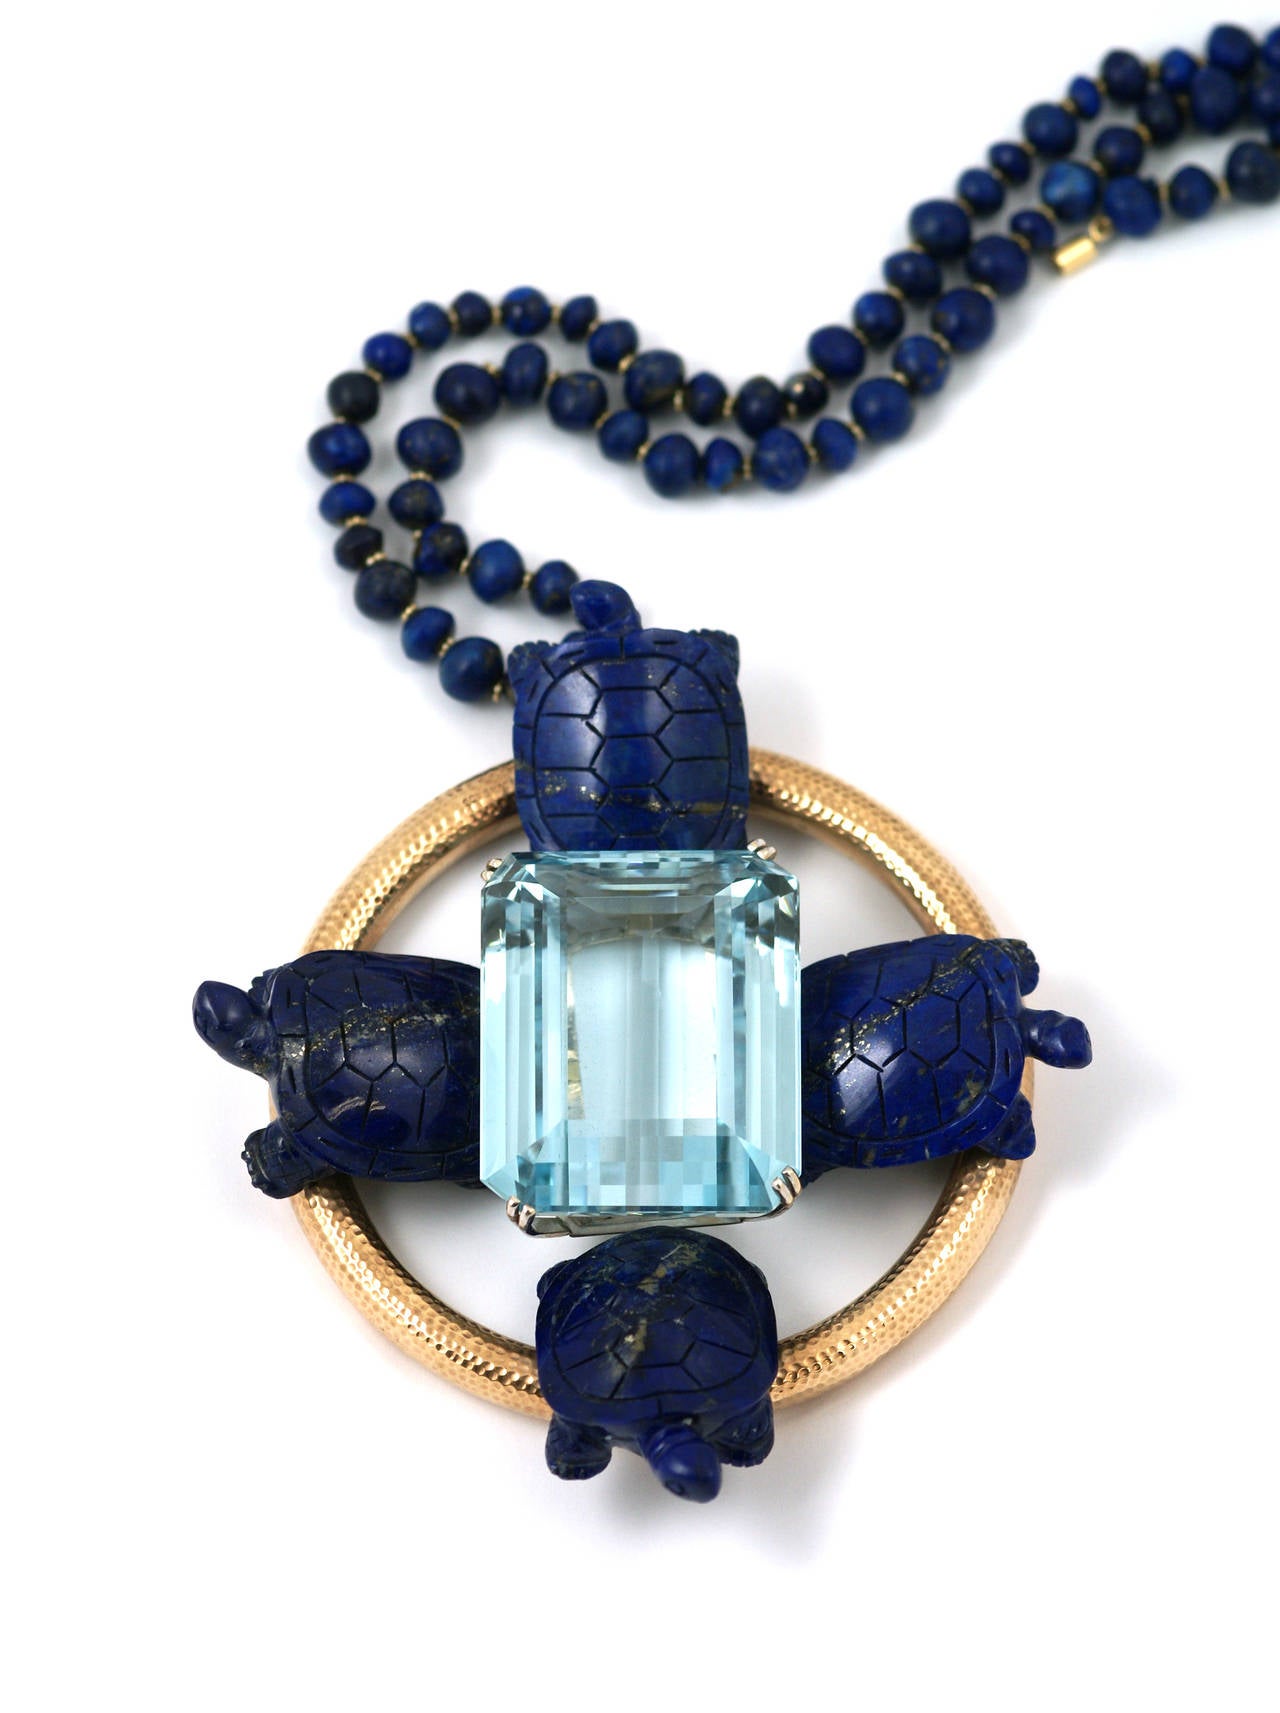 Eine extravagante und beeindruckende Halskette, bestehend aus vier Lapislazuli-Schildkröten, die in einen Teich